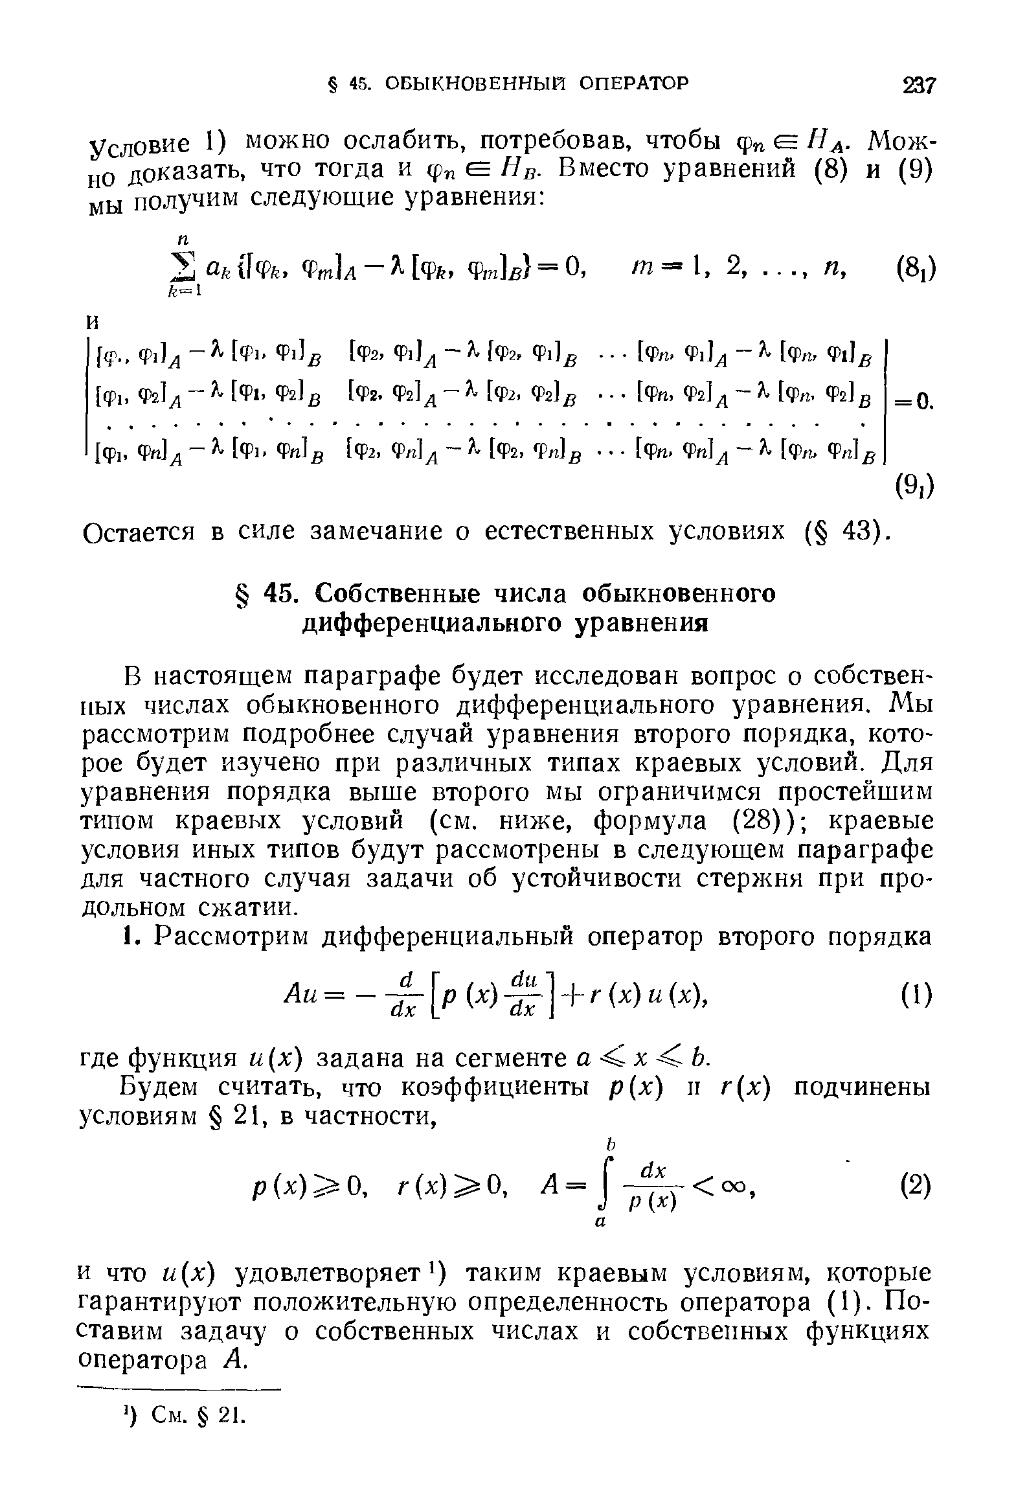 § 45. Собственные числа обыкновенного дифференциального уравнения